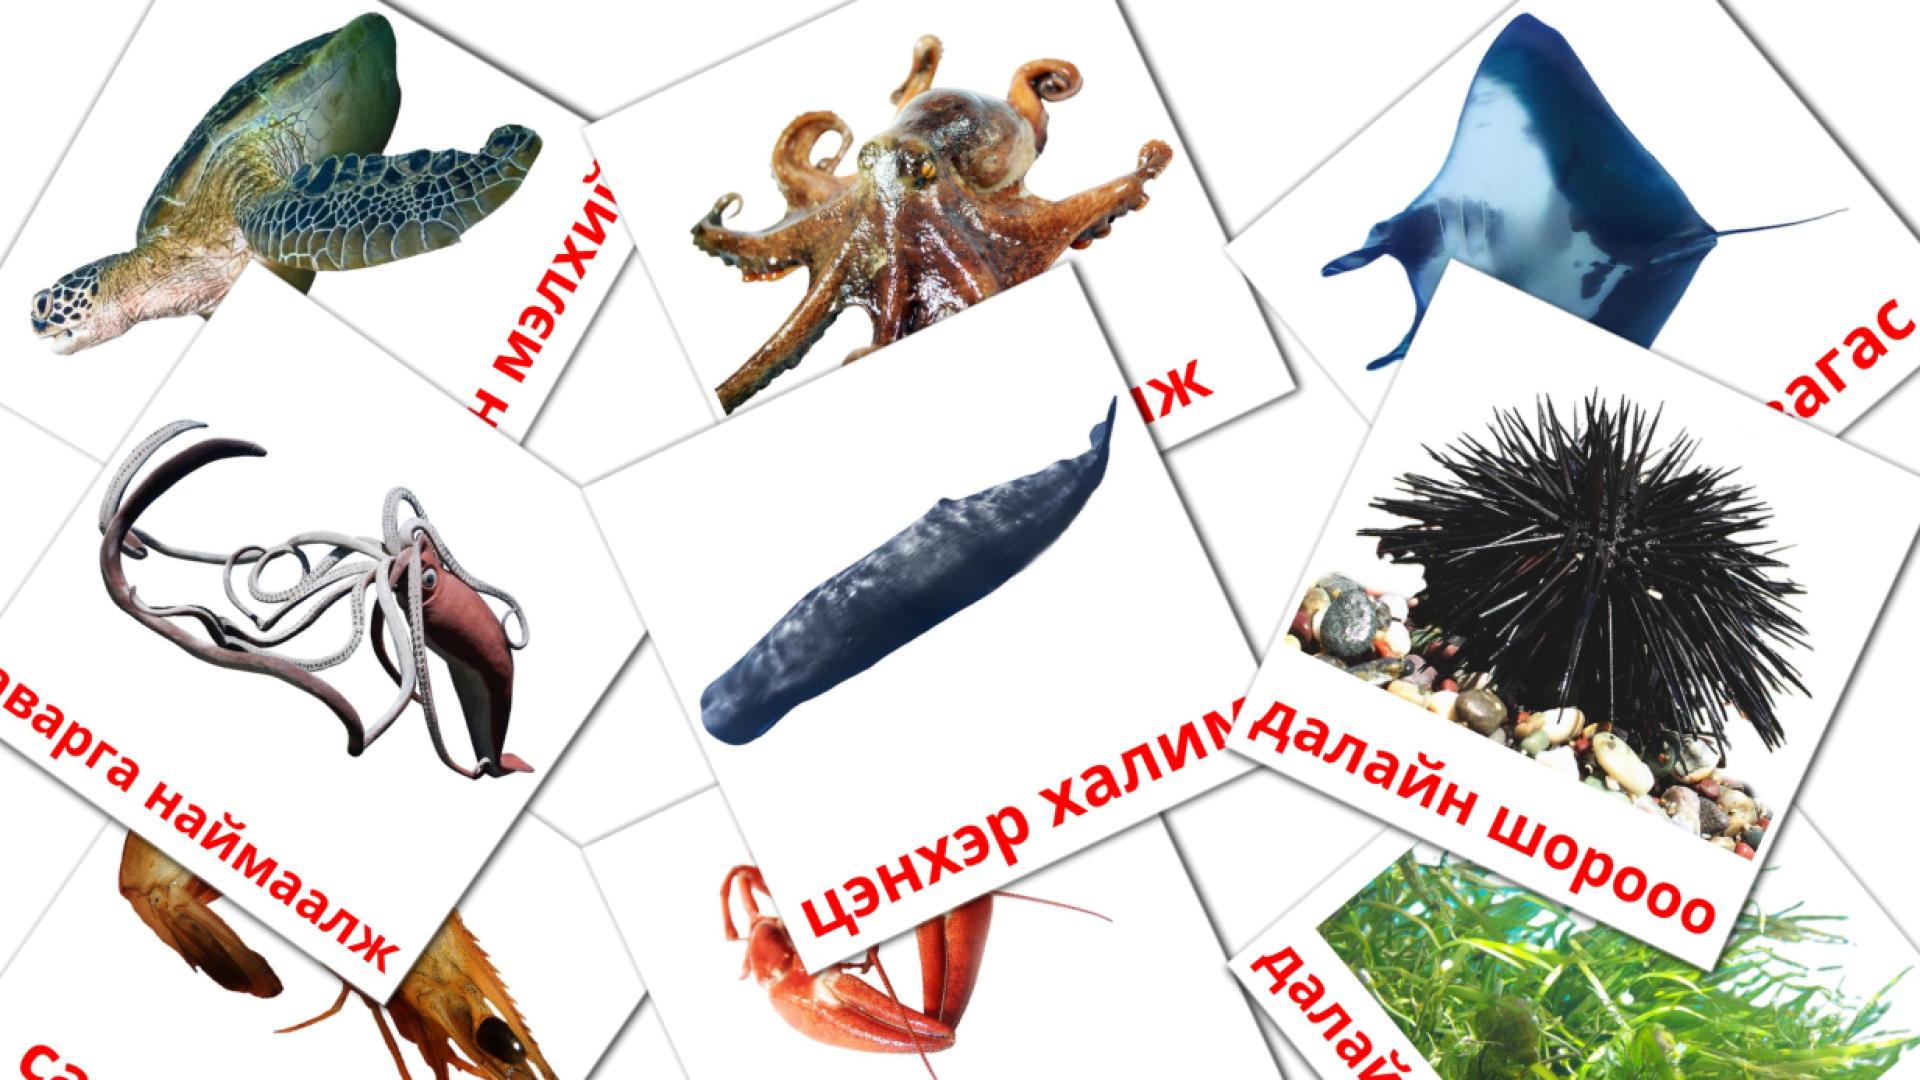 29 Bildkarten für далайн амьтад